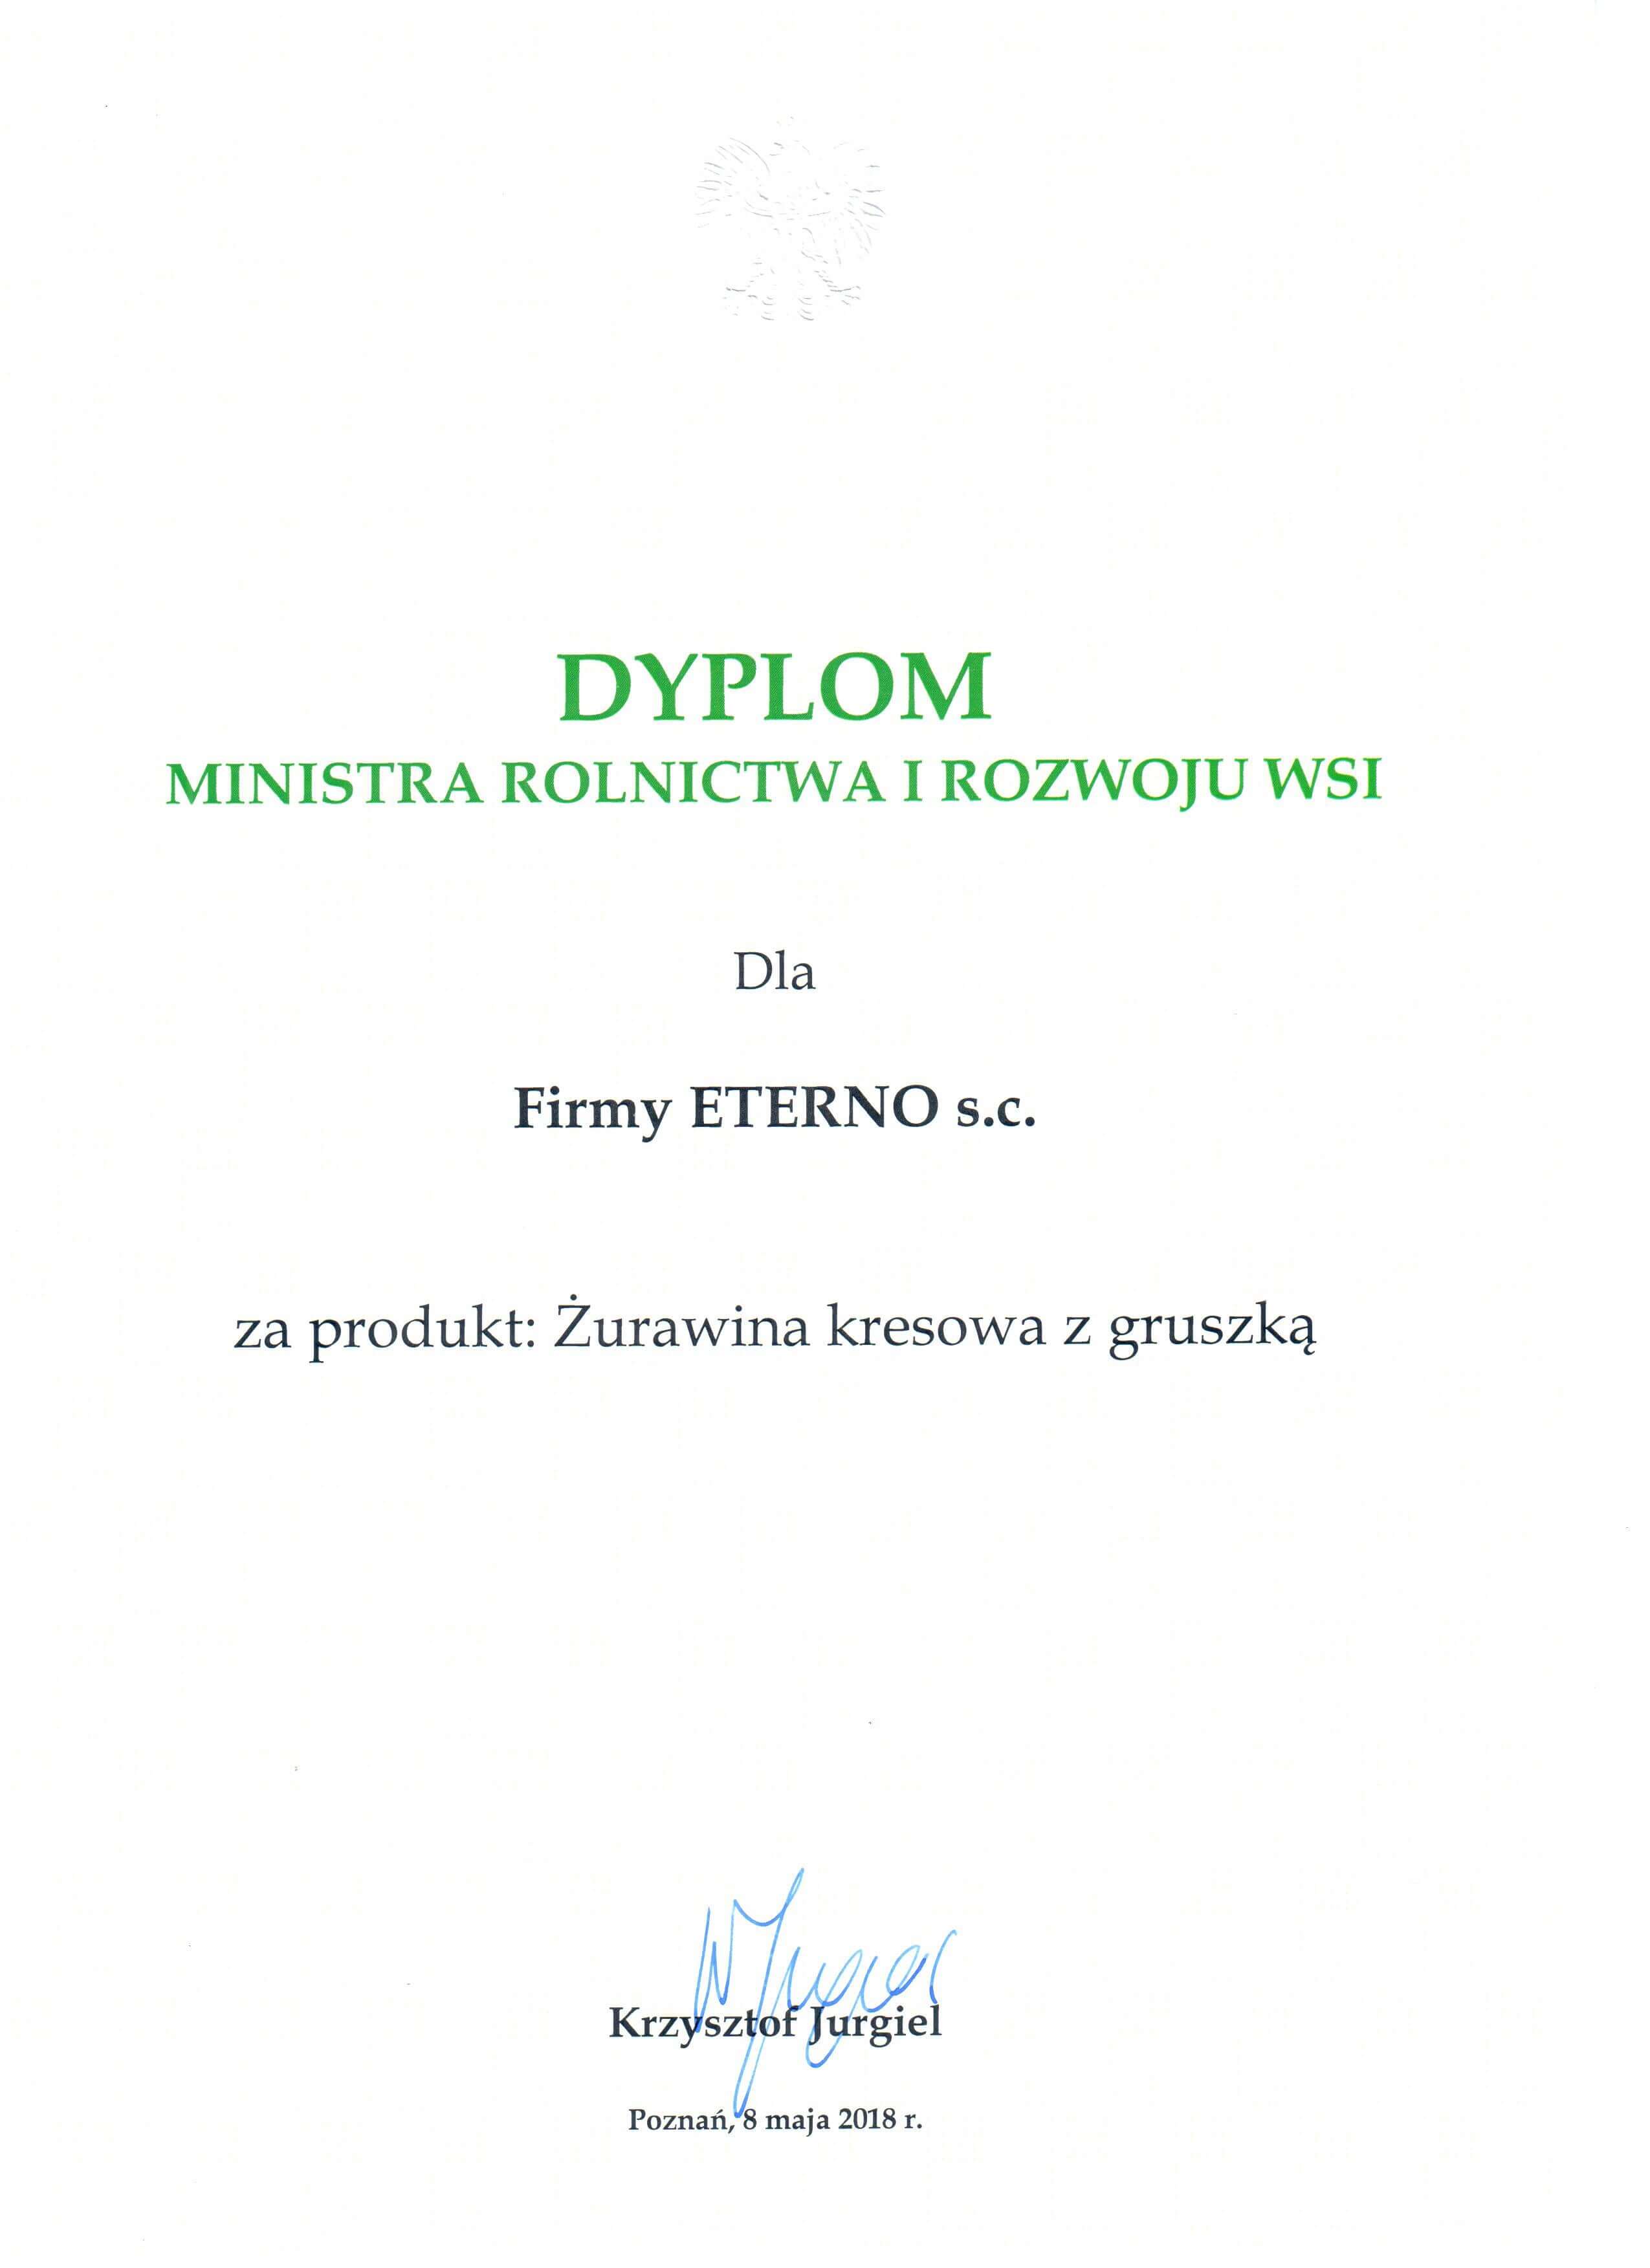 Polski Producent Żywności Dyplom Ministra